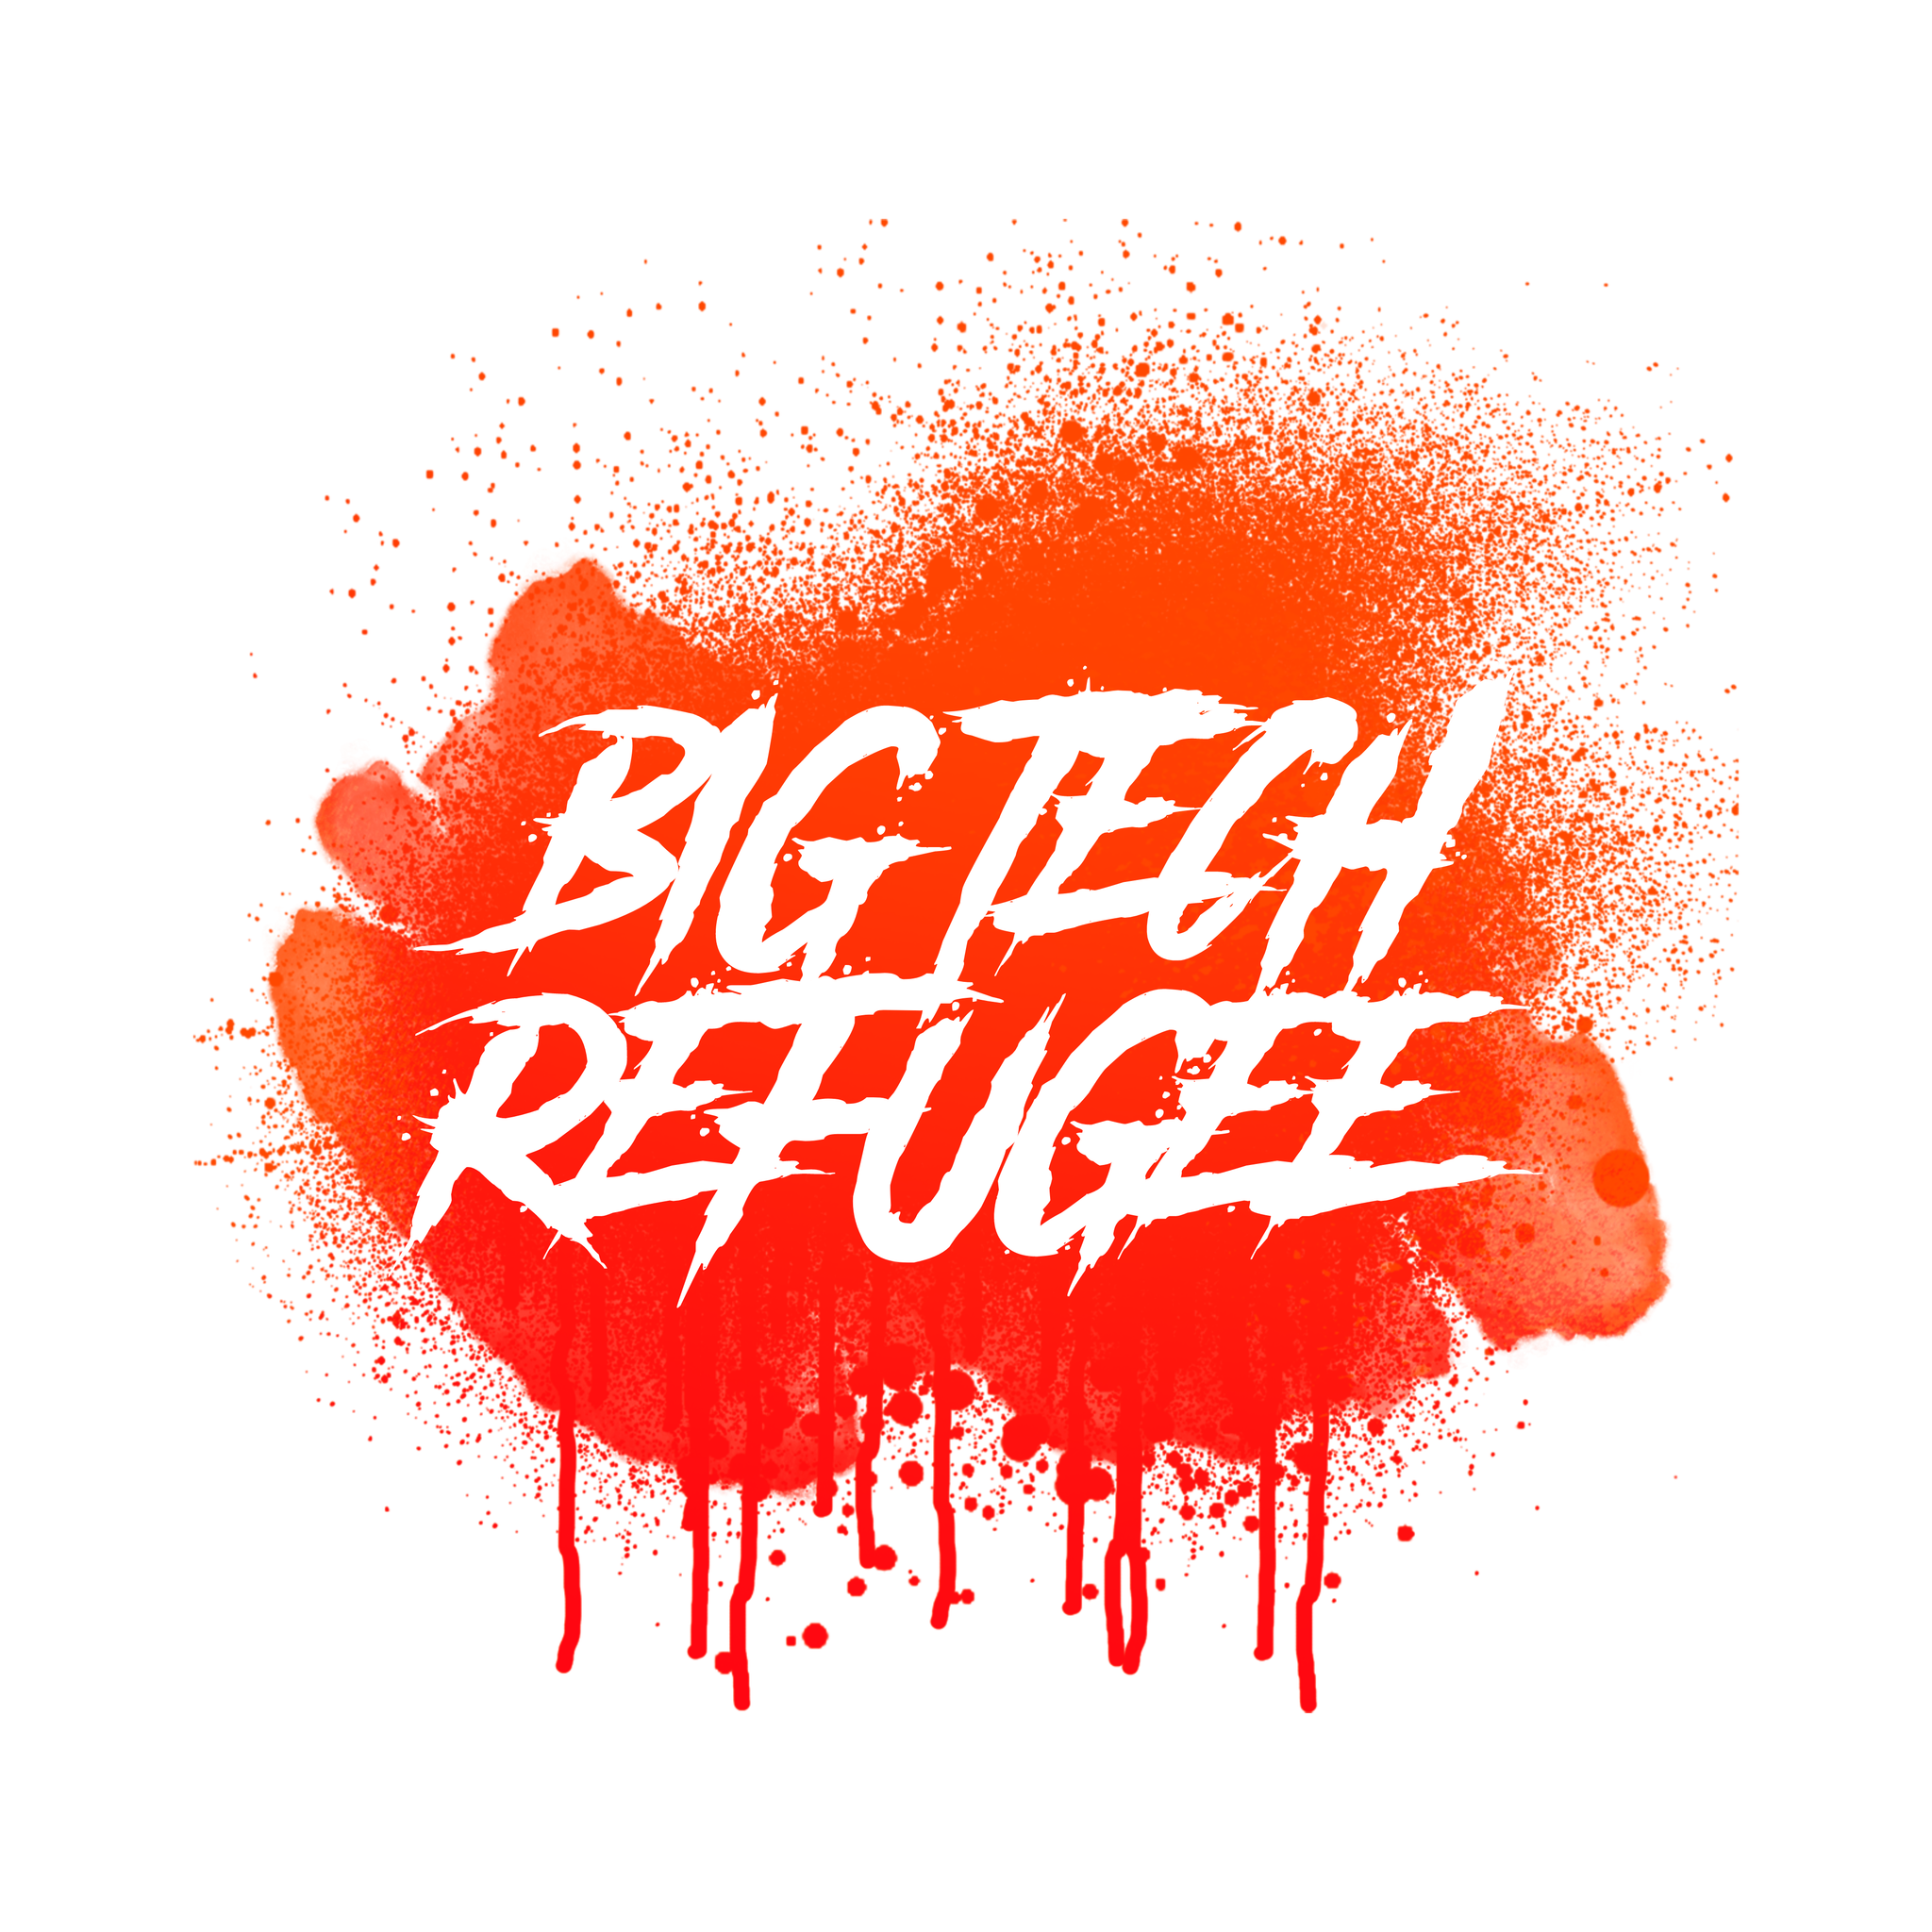 Big Tech Refugee Sticker